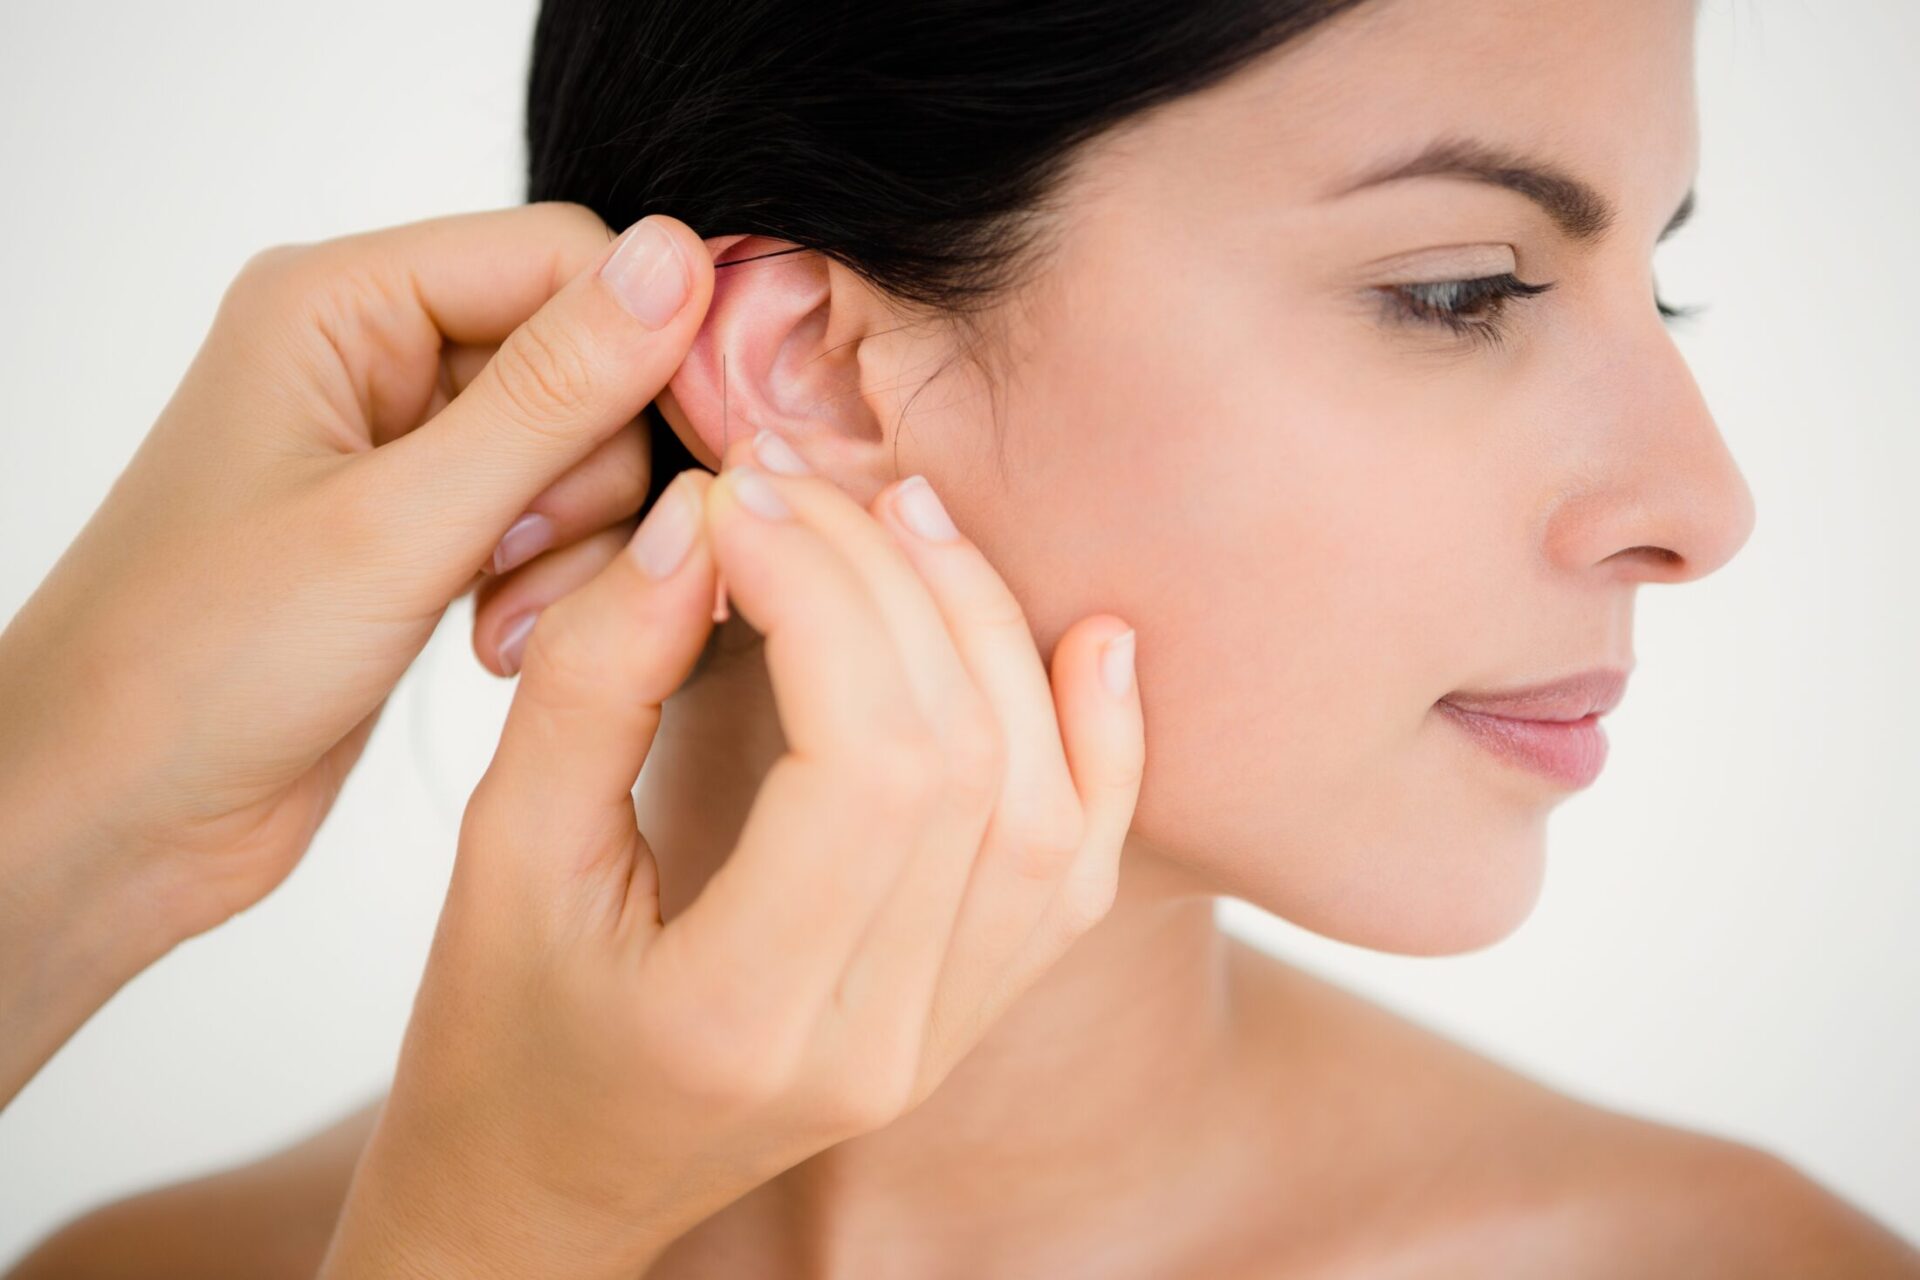 Ohr-Akupunktur beim Heilpraktiker wahrnehmen